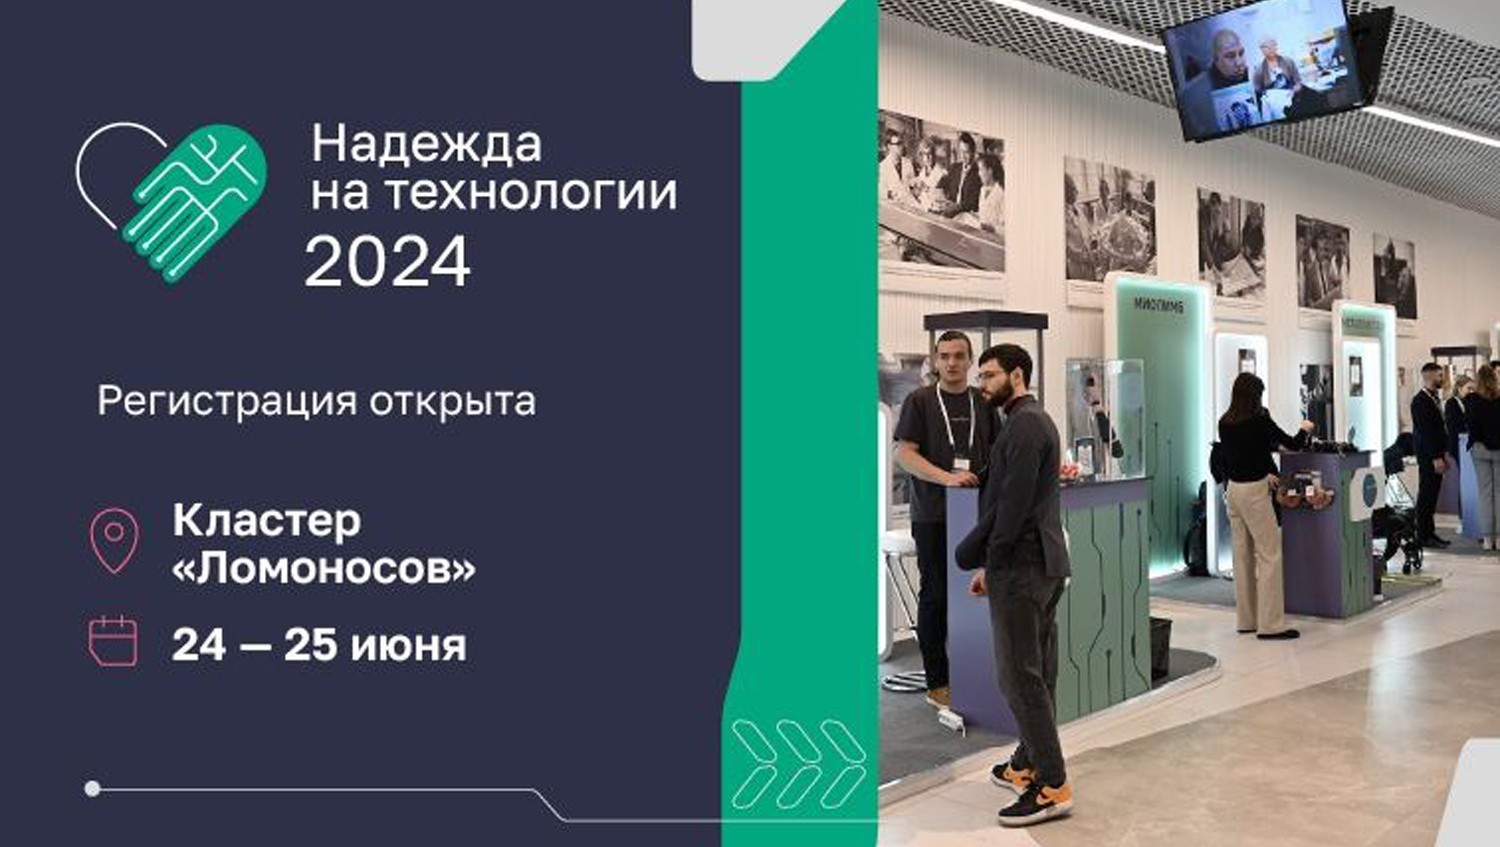 IX Национальный форум «Надежда на технологии» пройдет в июне 2024 года